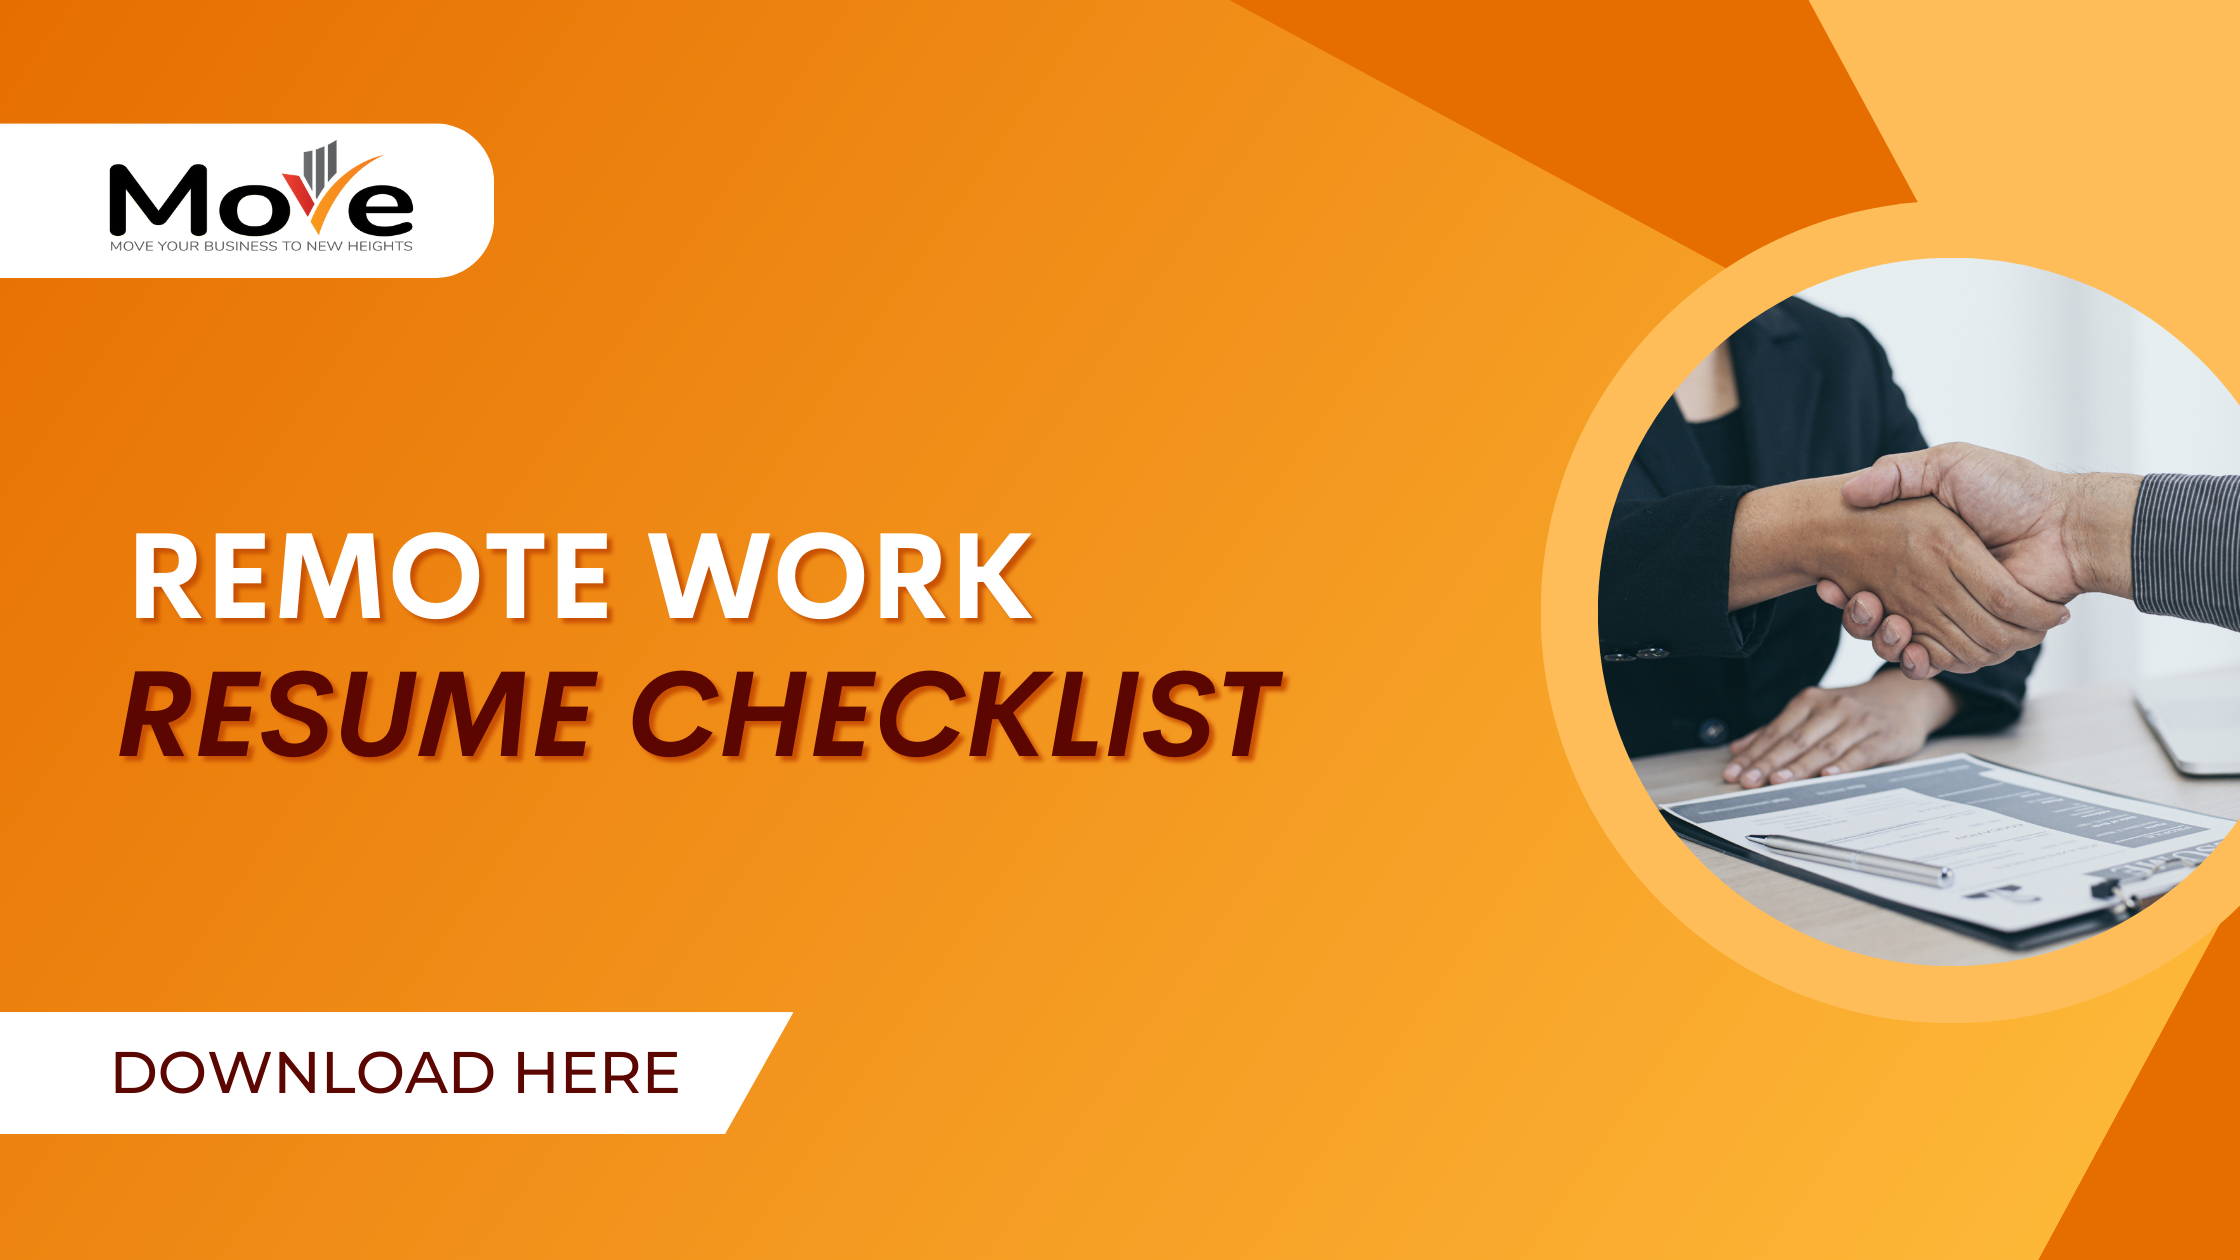 Remote work checklist